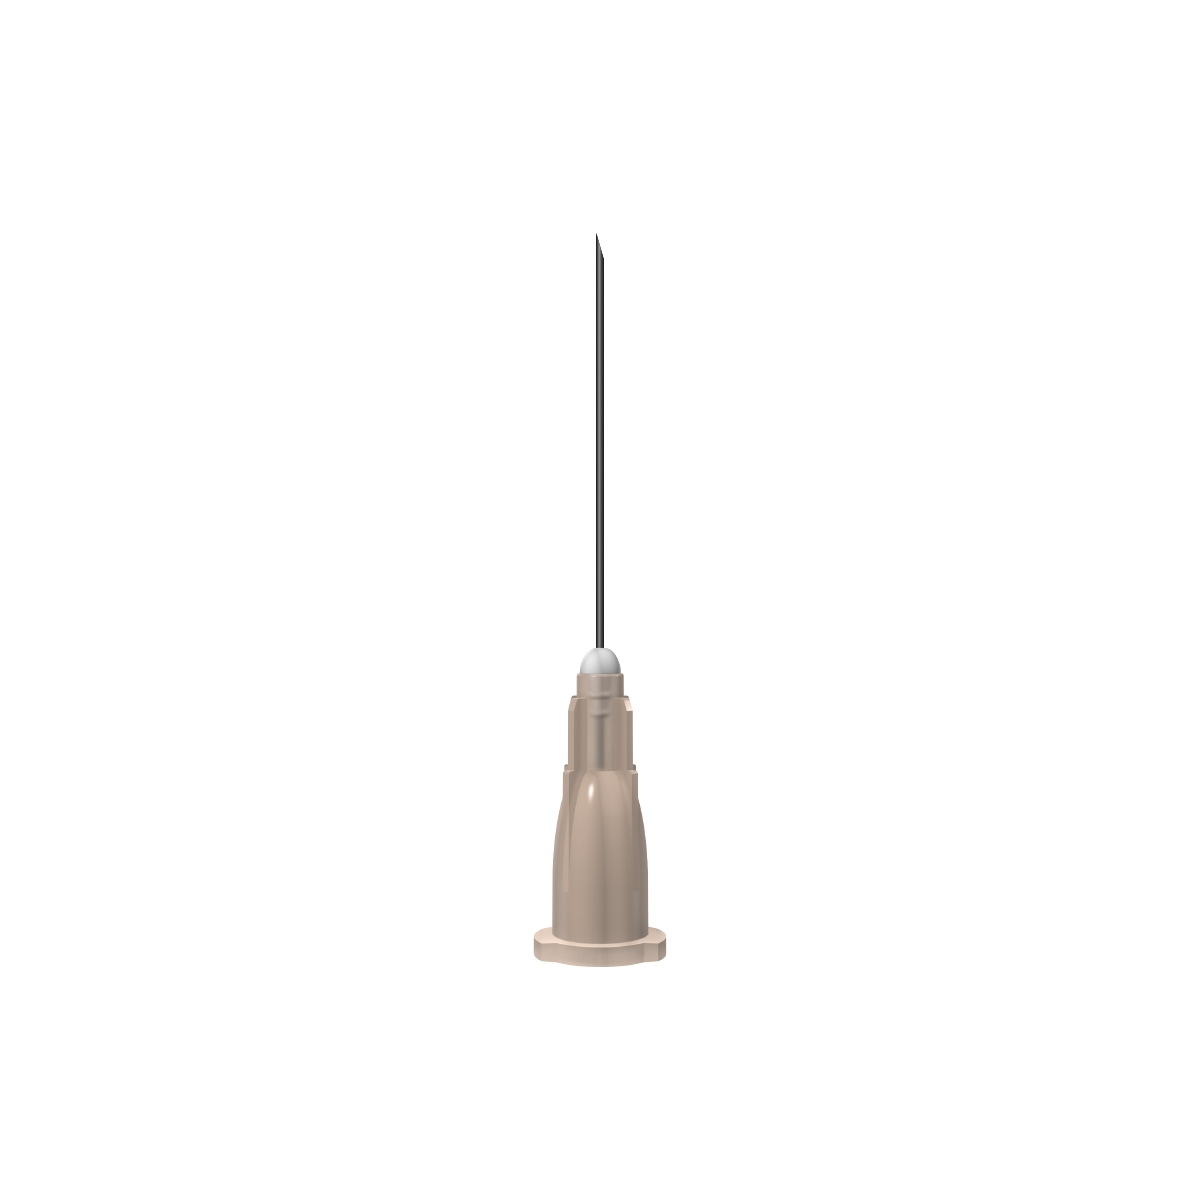 Unisharp: Brown 26G 25mm (1 inch) needle